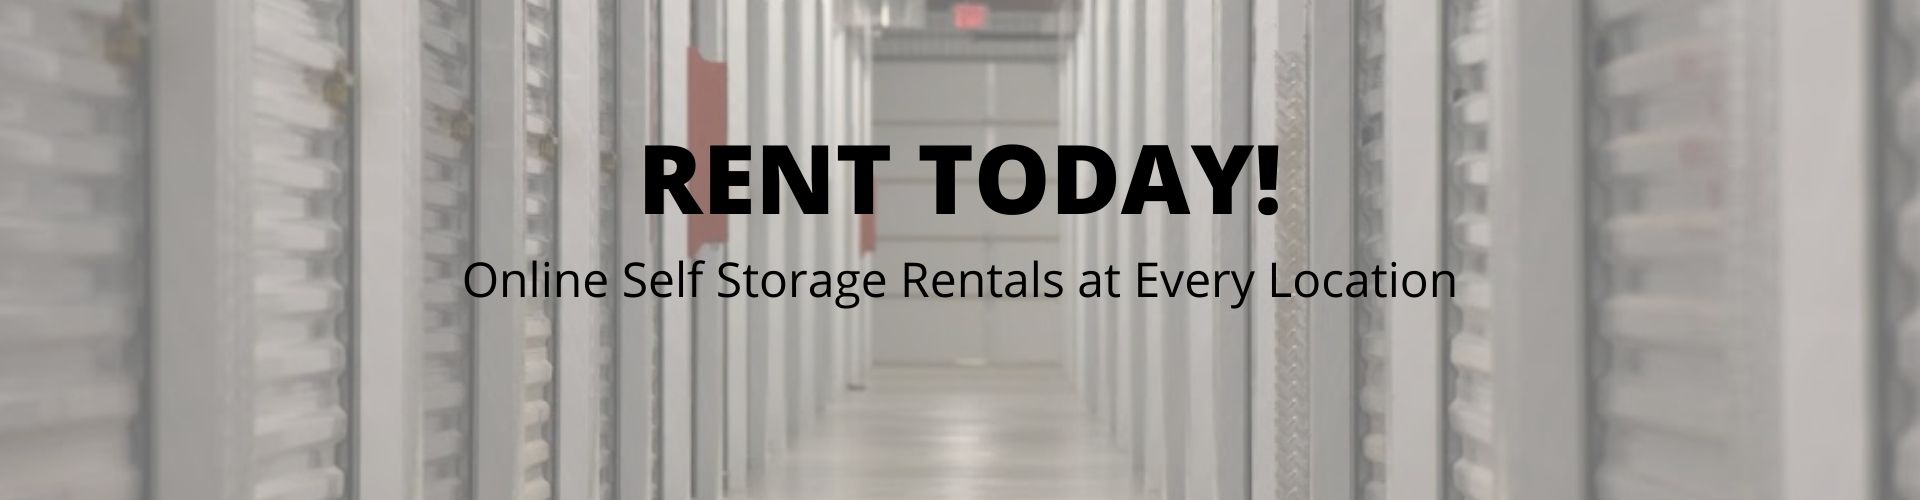 online storage rentals at Economy Self Storage